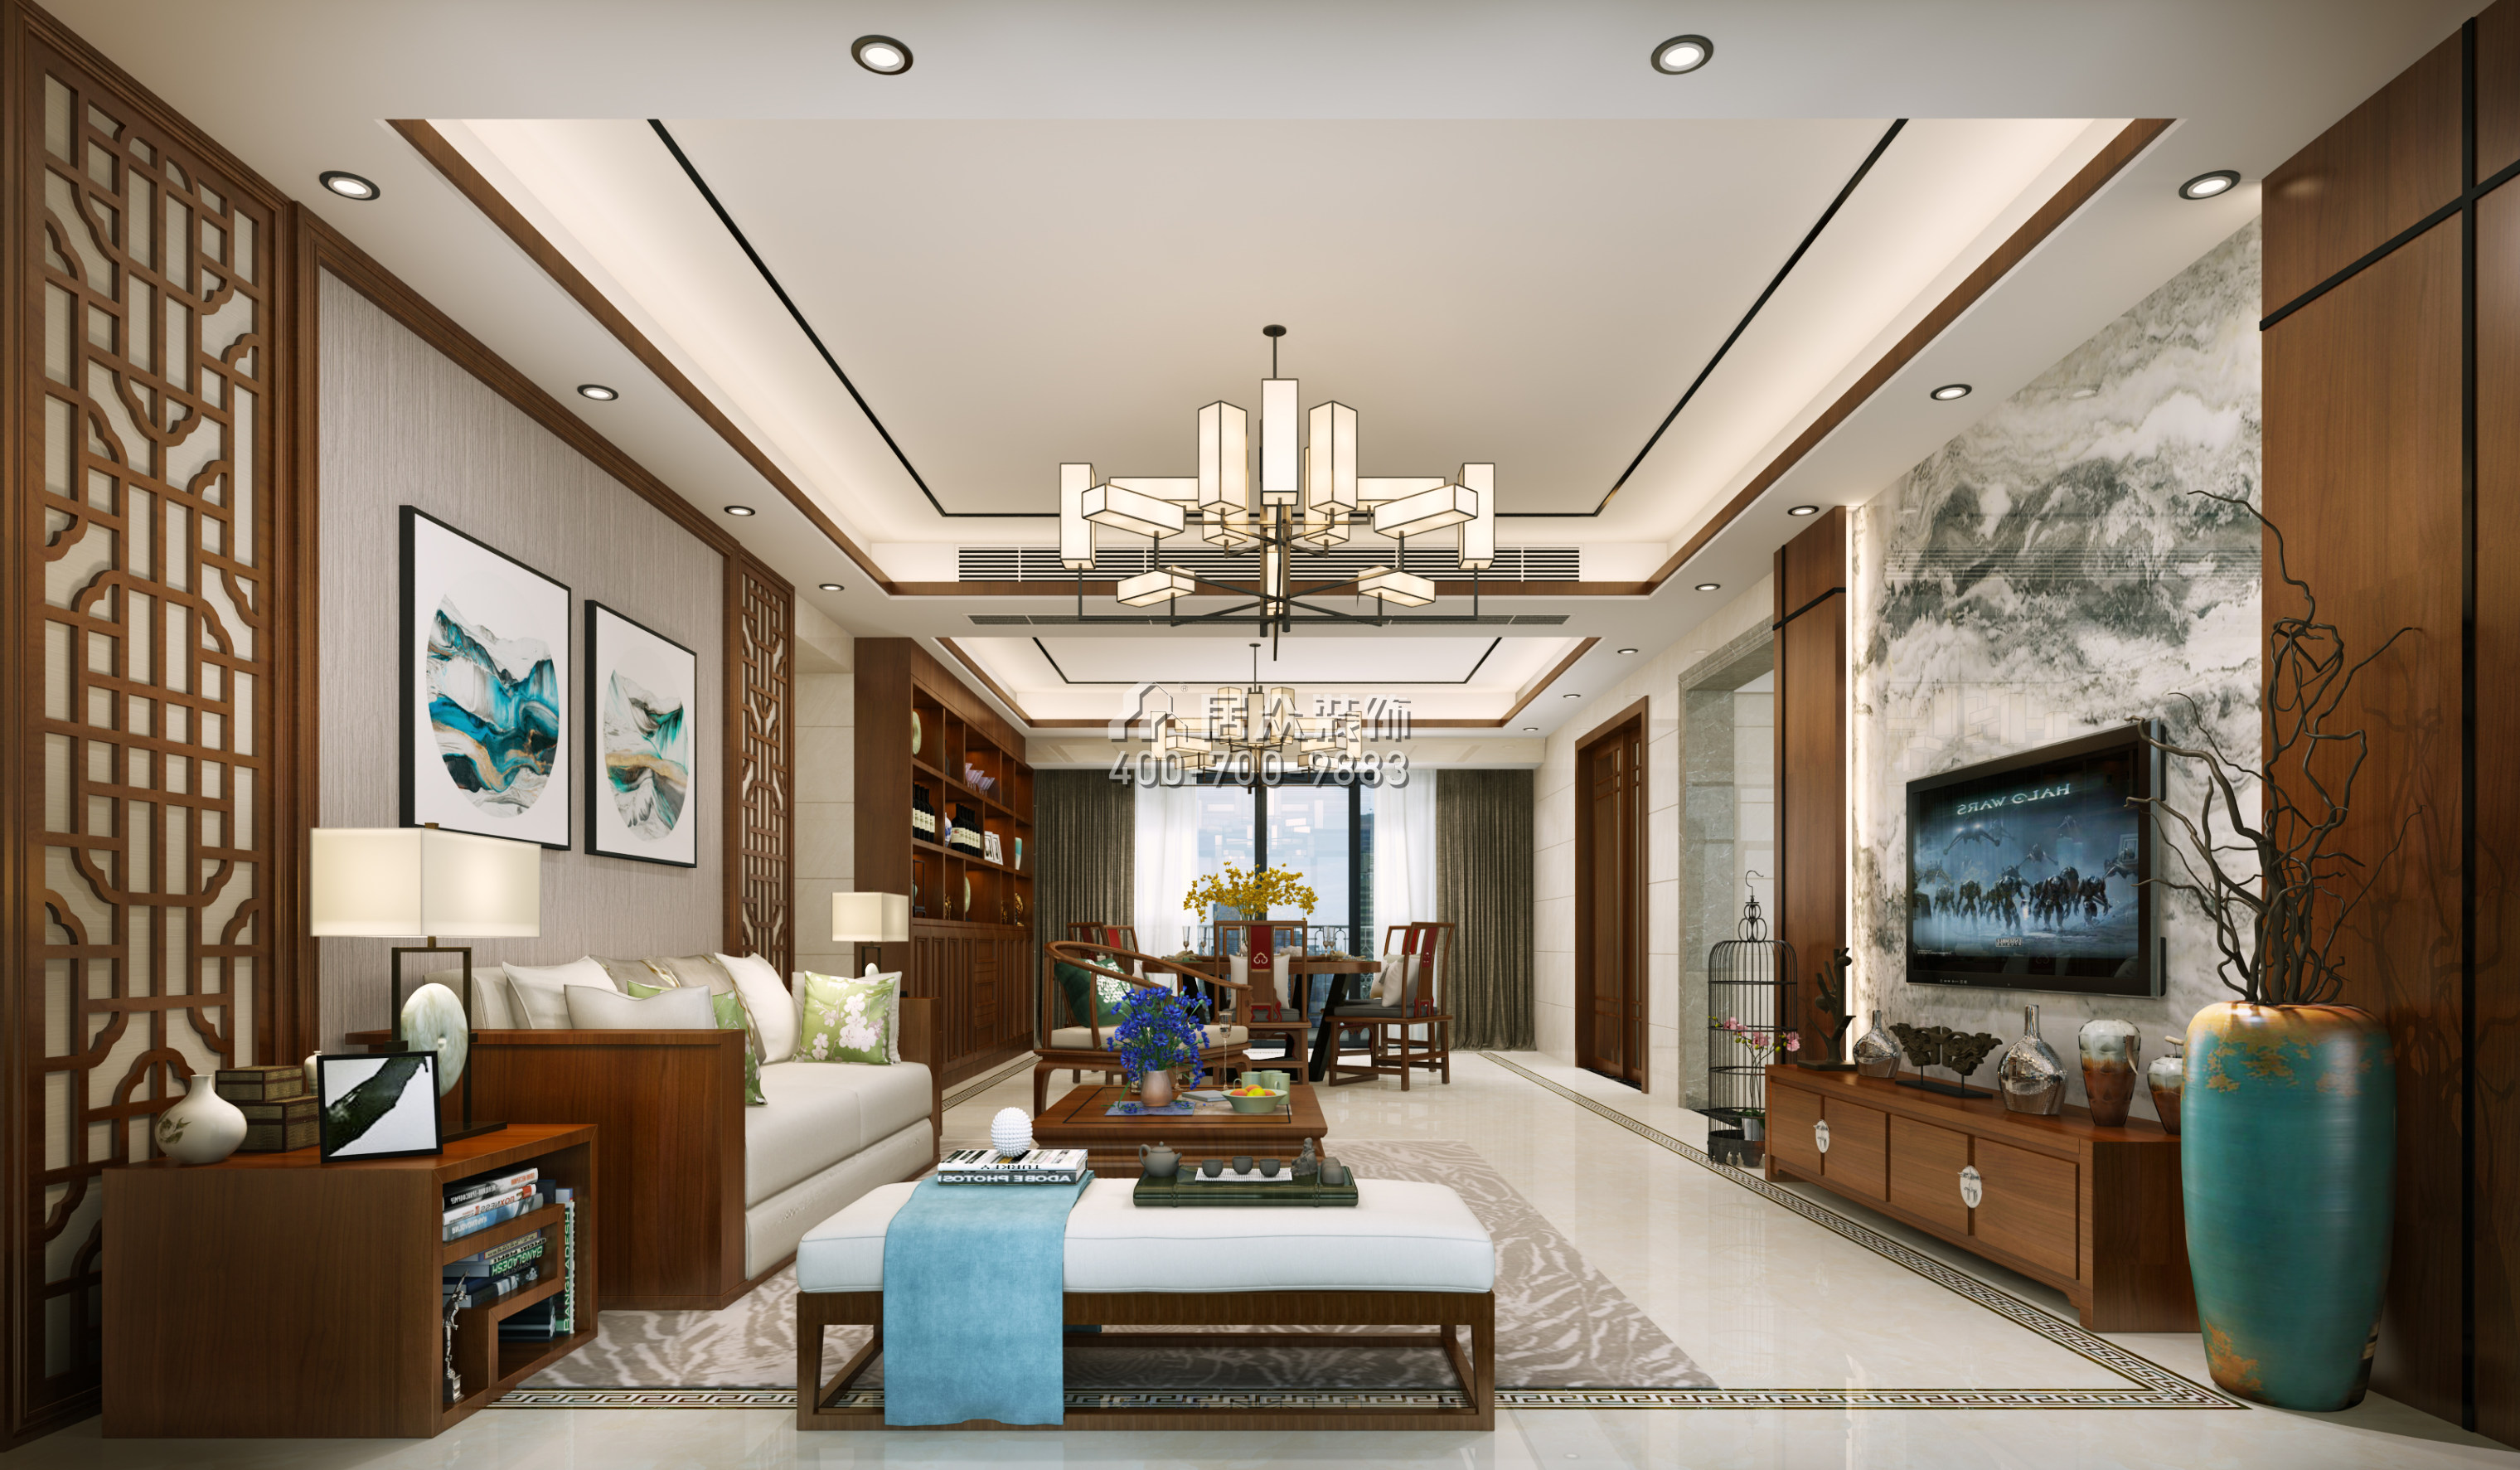 珑城半山215平方米中式风格平层户型客厅装修效果图